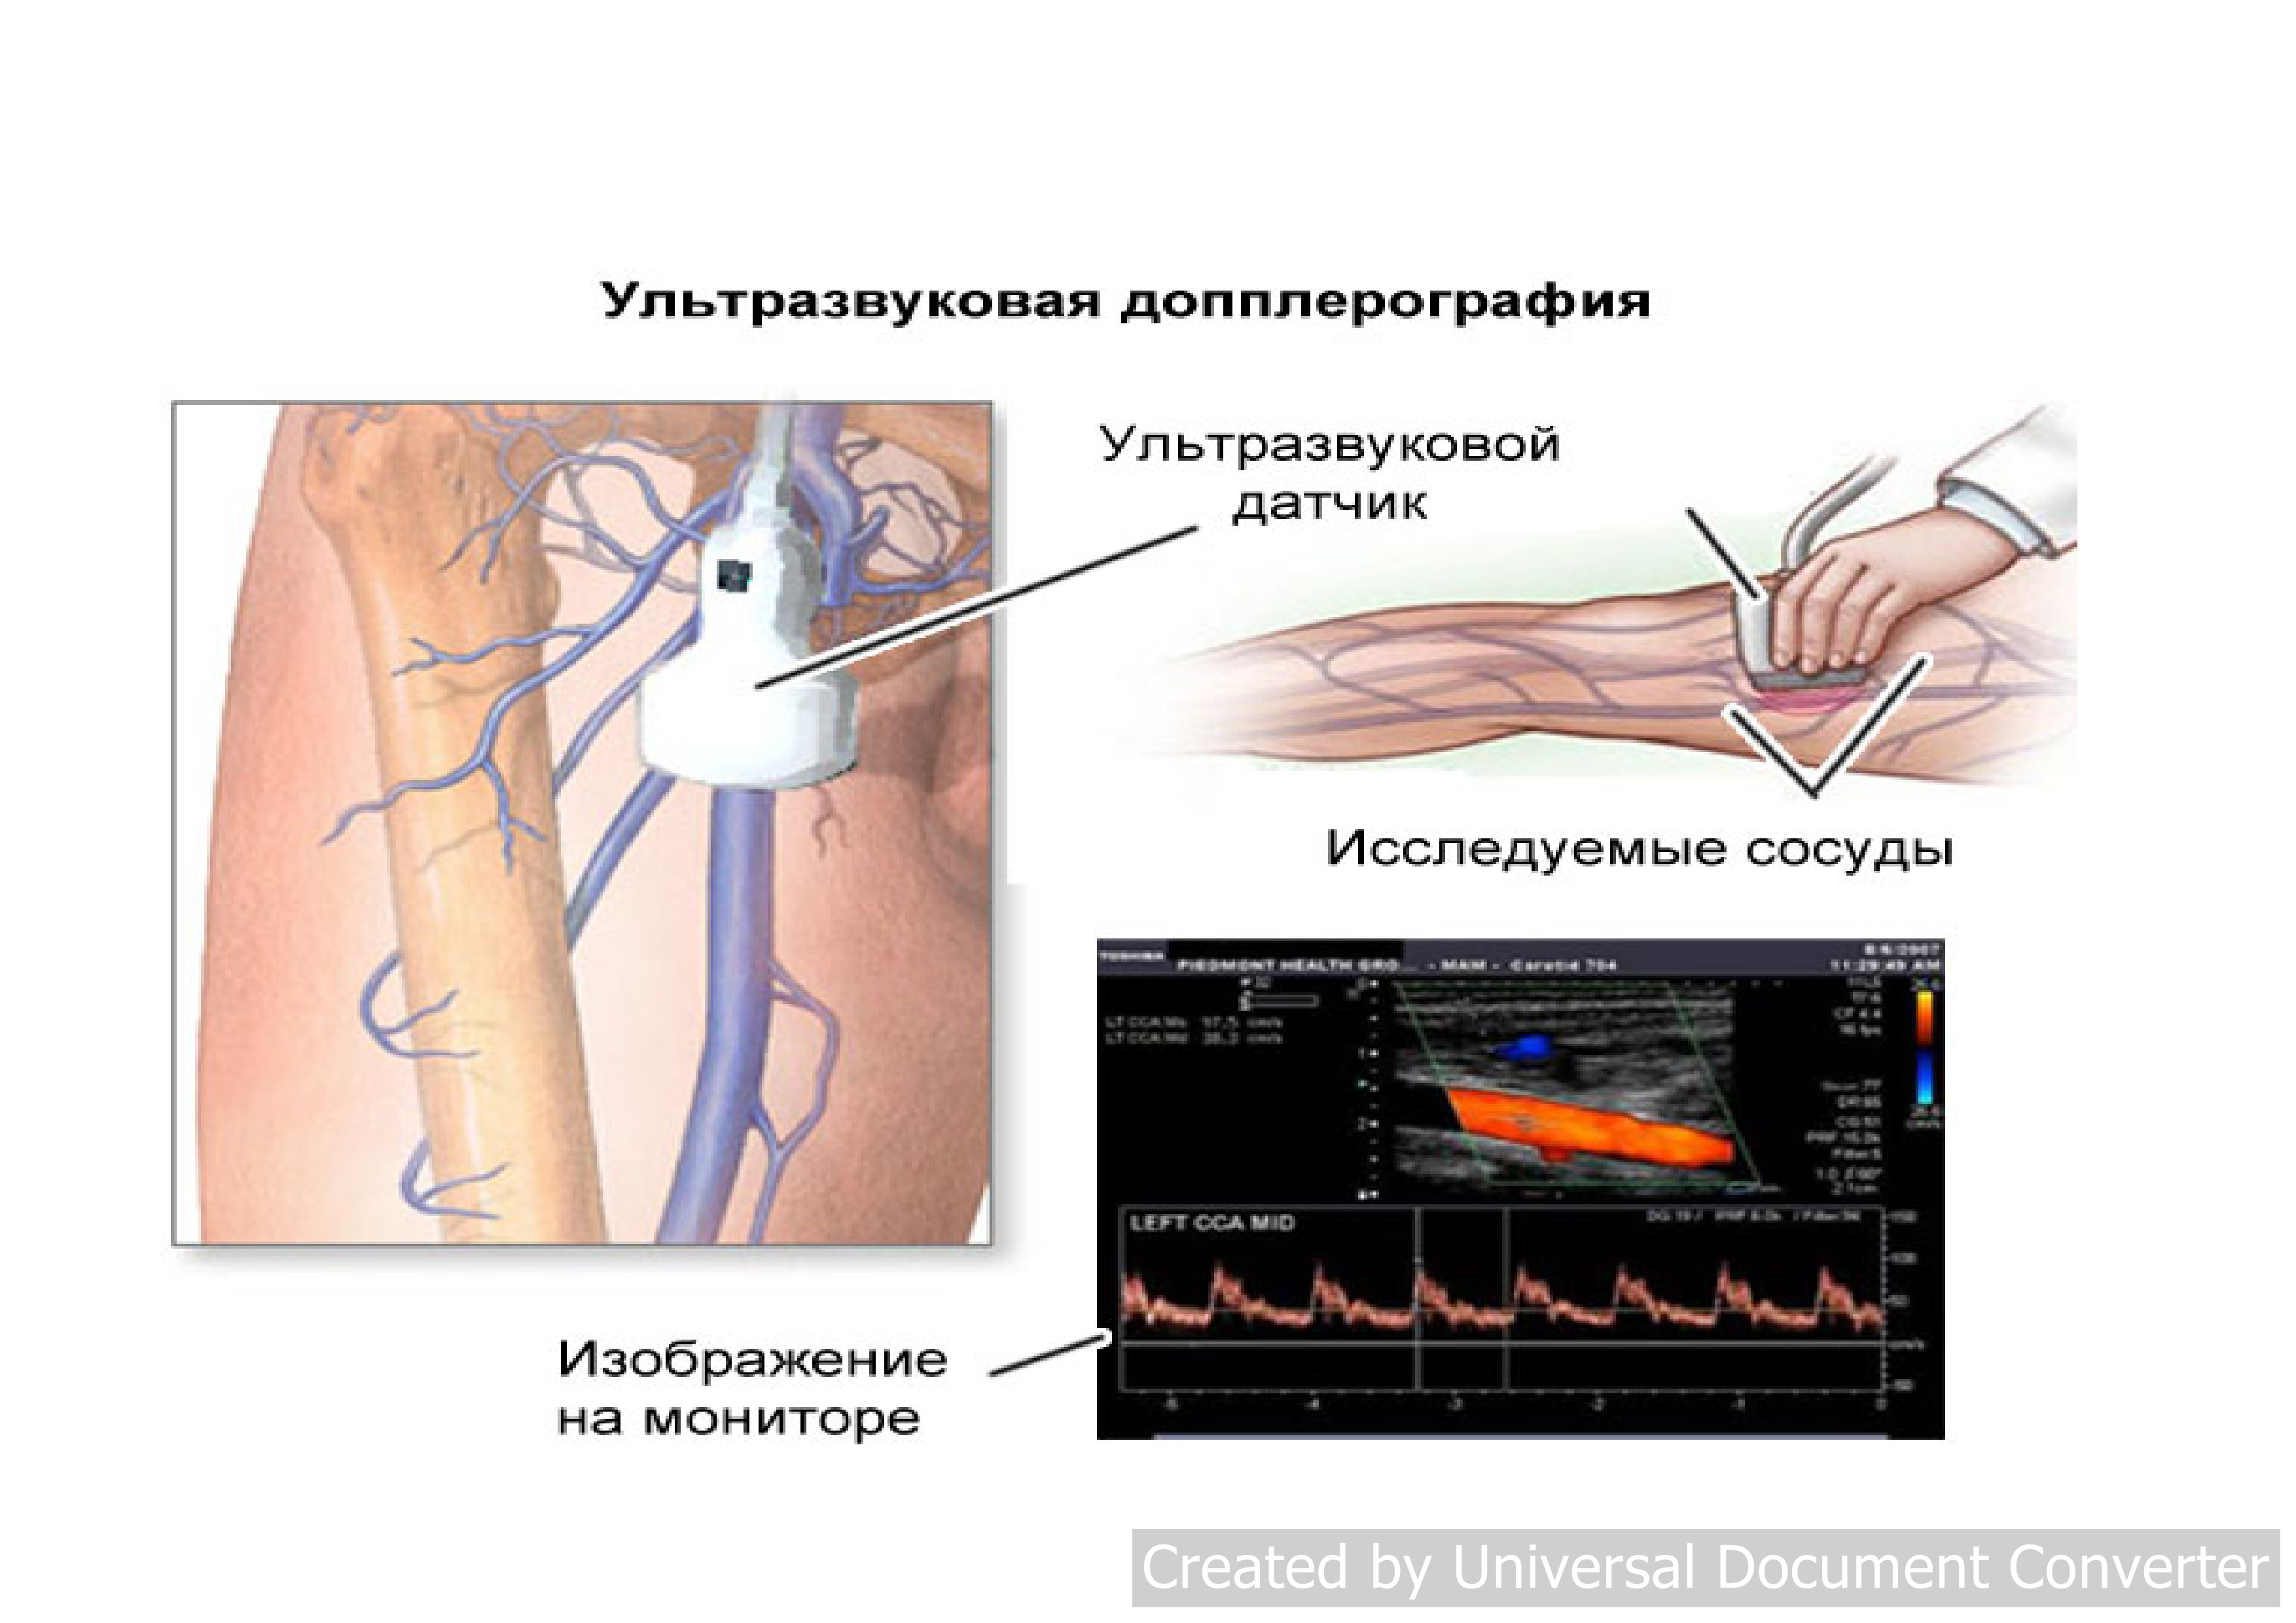 Ультразвуковая допплерография артерий нижних конечностей